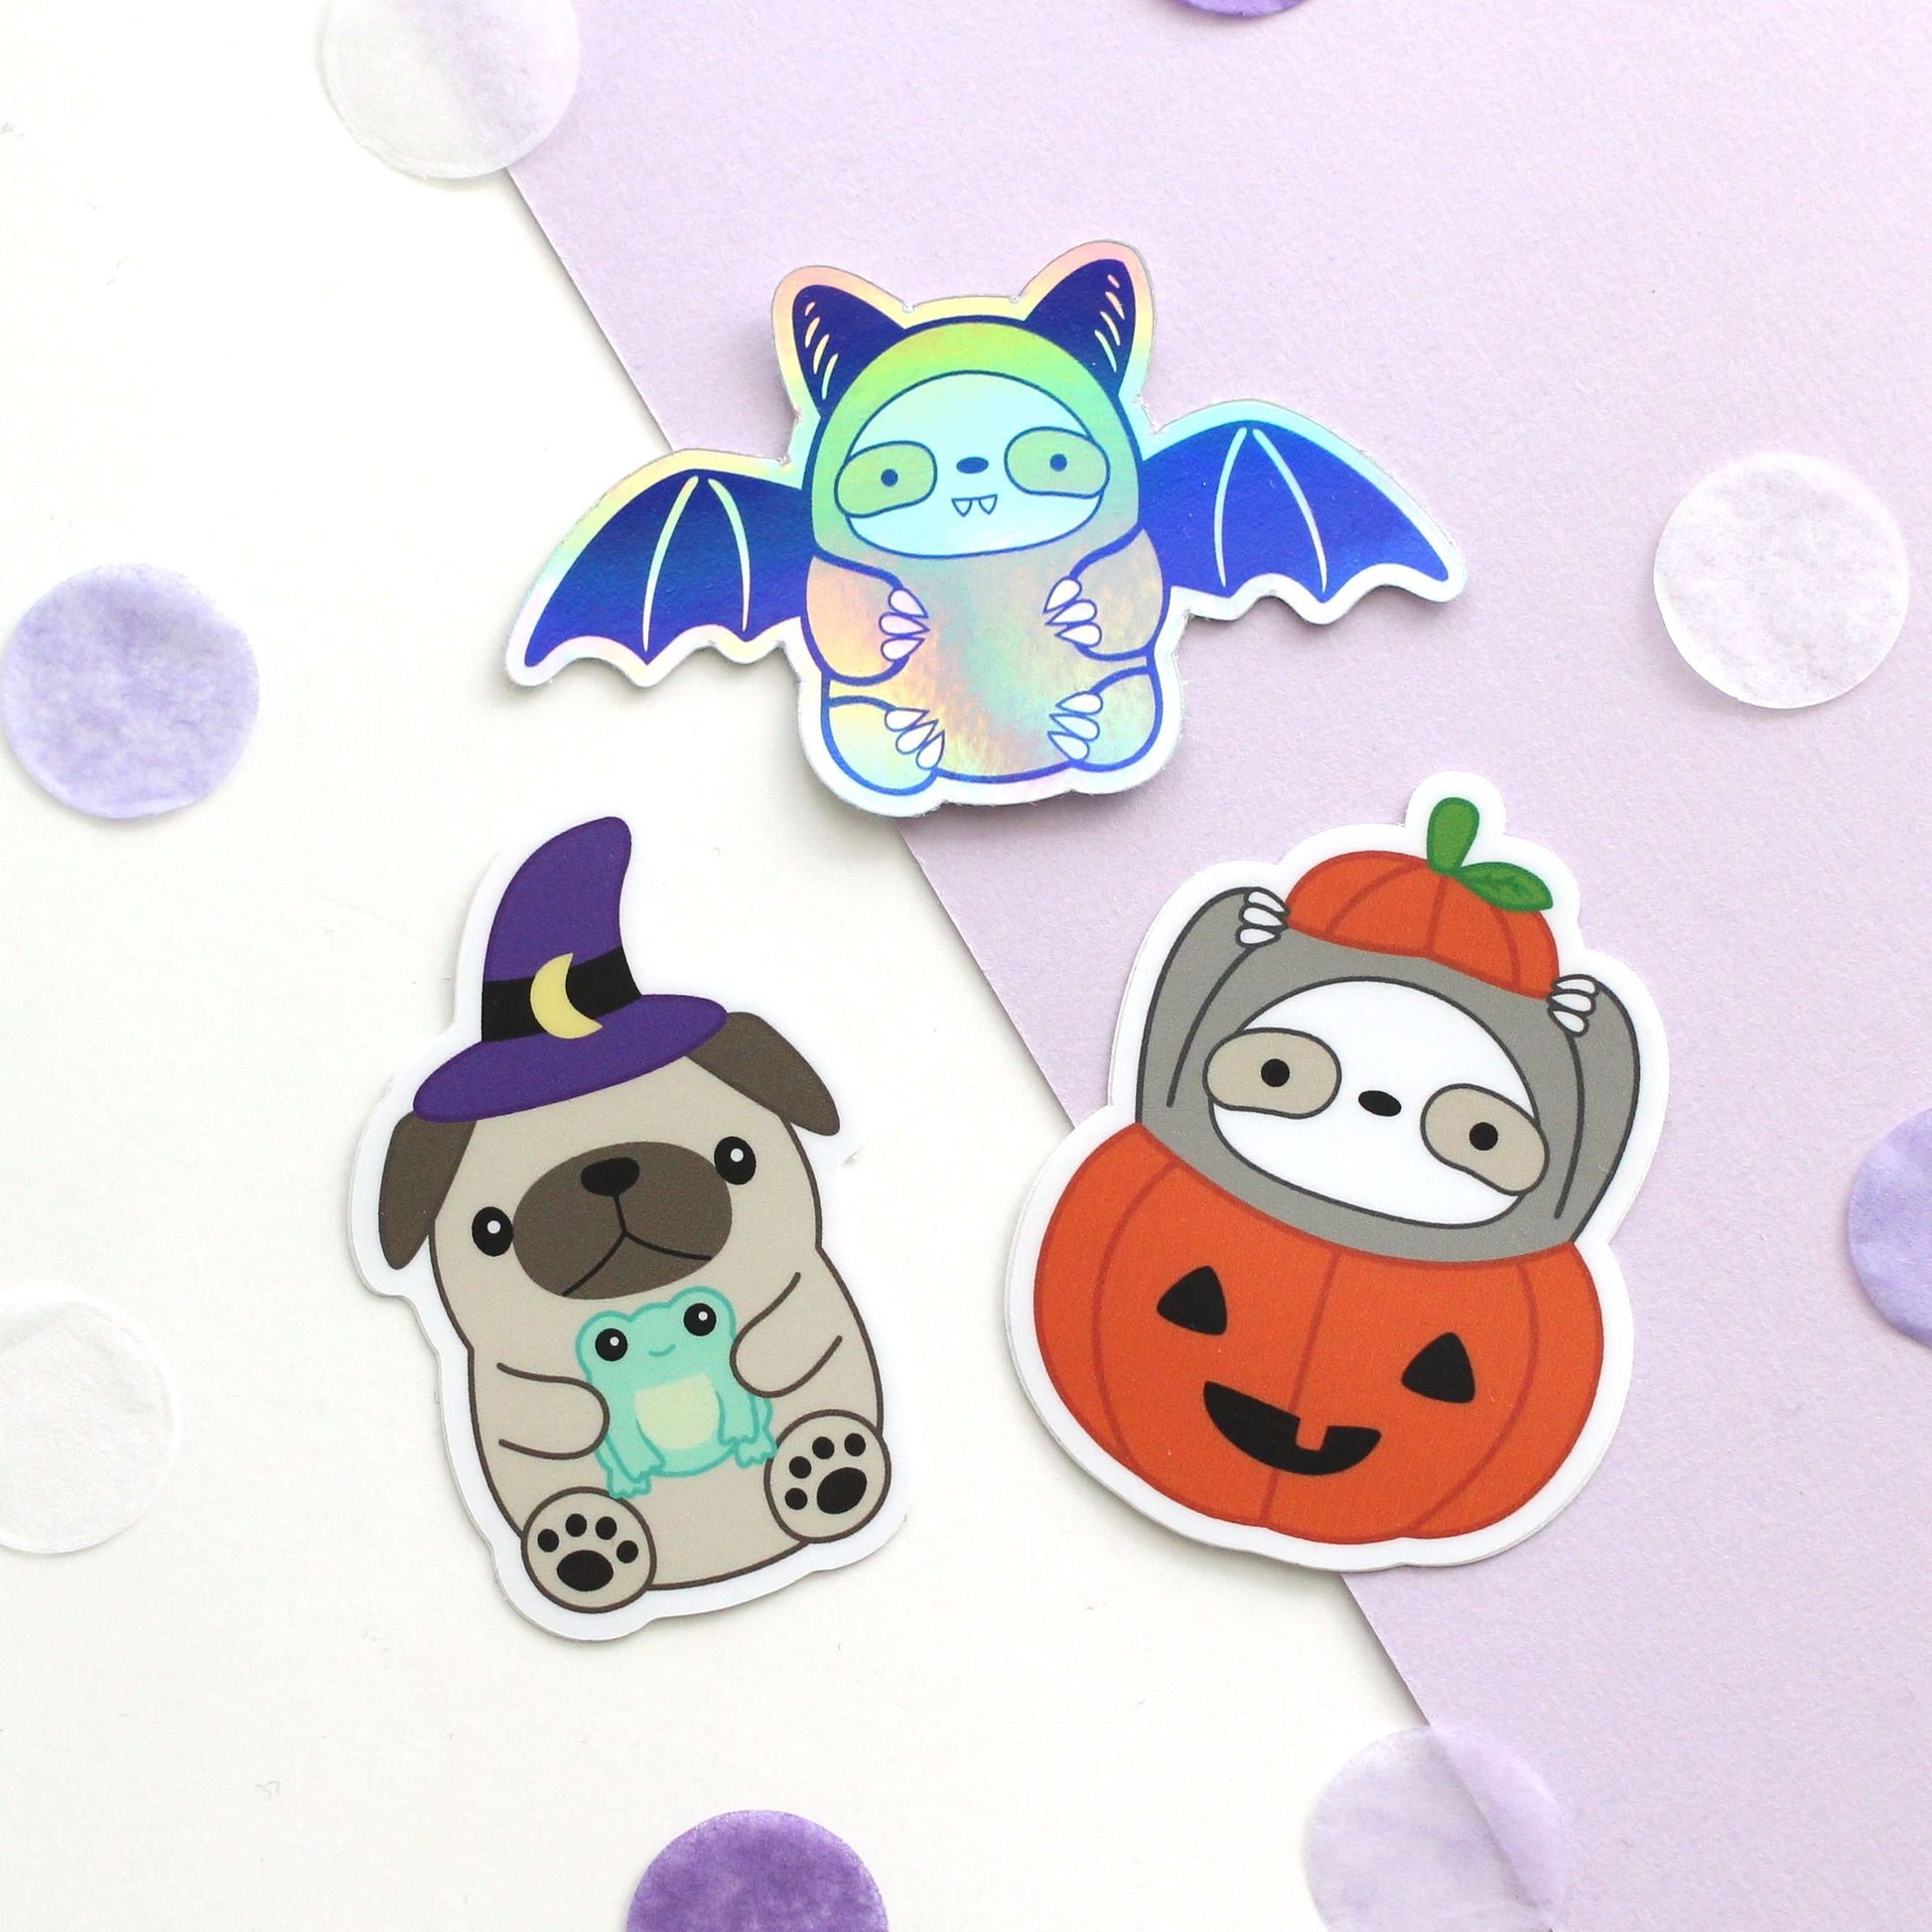 Pumpkin Sloth Vinyl Sticker - Cute Halloween Sticker - Sloth Decals by Wild Whimsy Woolies